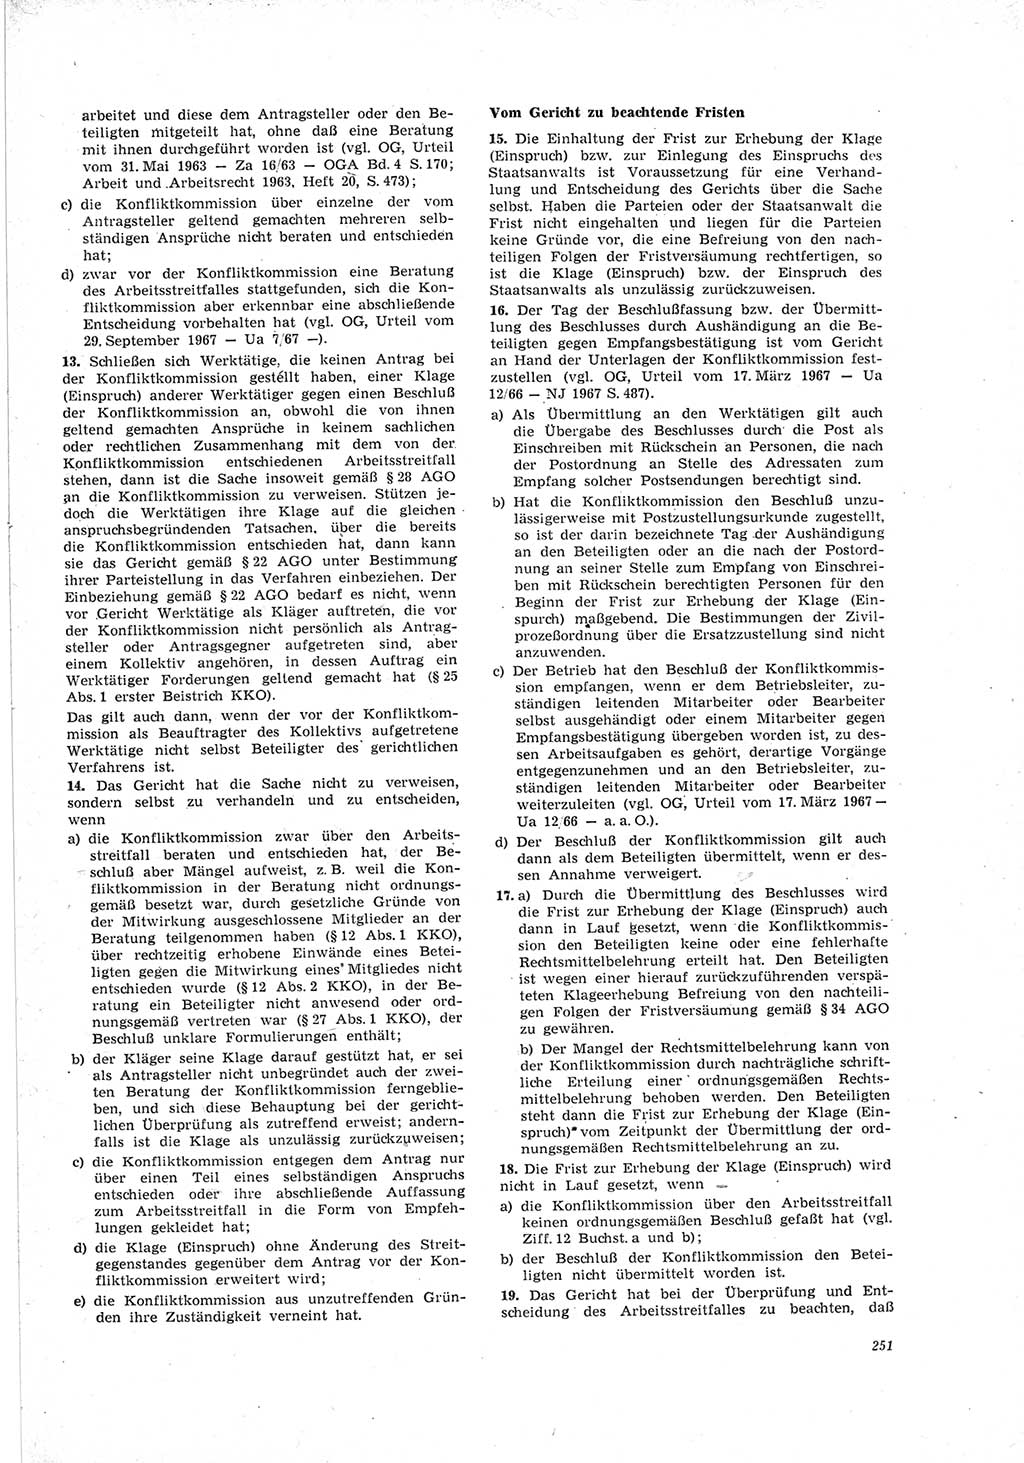 Neue Justiz (NJ), Zeitschrift für Recht und Rechtswissenschaft [Deutsche Demokratische Republik (DDR)], 23. Jahrgang 1969, Seite 251 (NJ DDR 1969, S. 251)